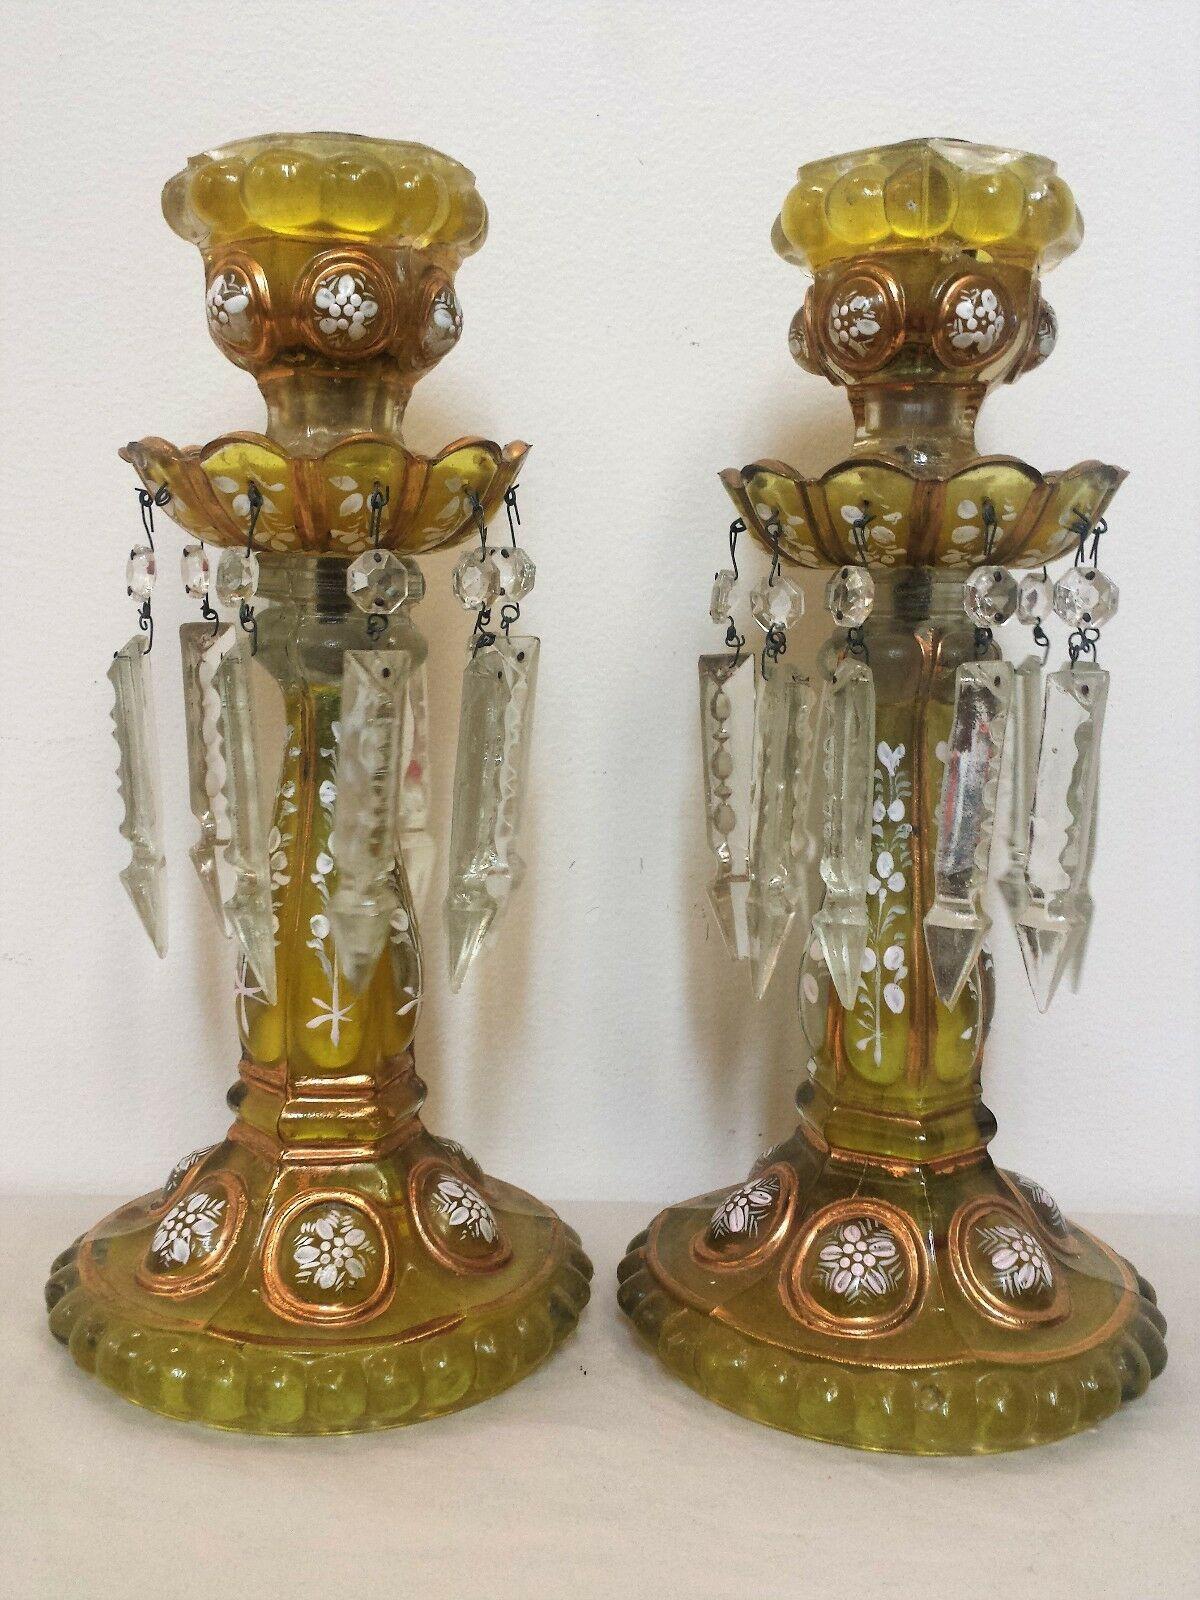 Paire de chandeliers Napoléon III du 19ème siècle par Baccarat France. Verre moulé dans un ton ambré. Travail floral en émail. Cette couleur est rare. Série des médaillons de Baccarat.